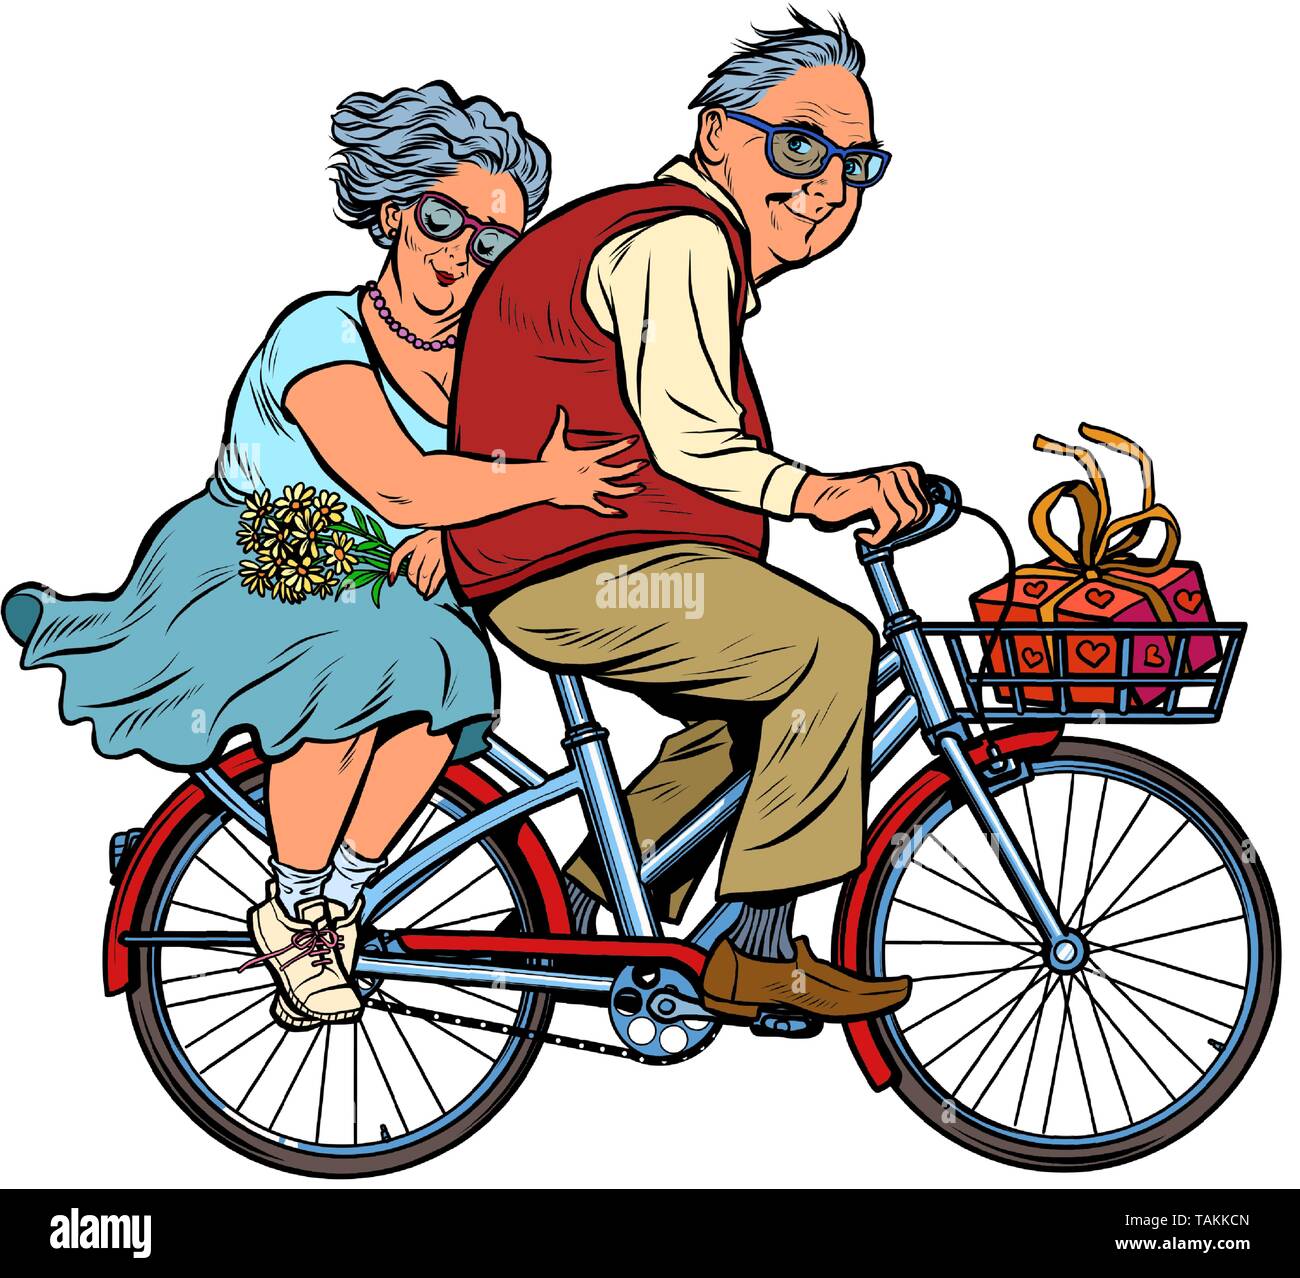 Il vecchio uomo e donna giovane in amore, in sella a una moto. Uno stile di vita attivo. La Pop art retrò illustrazione vettoriale kitsch vintage Illustrazione Vettoriale